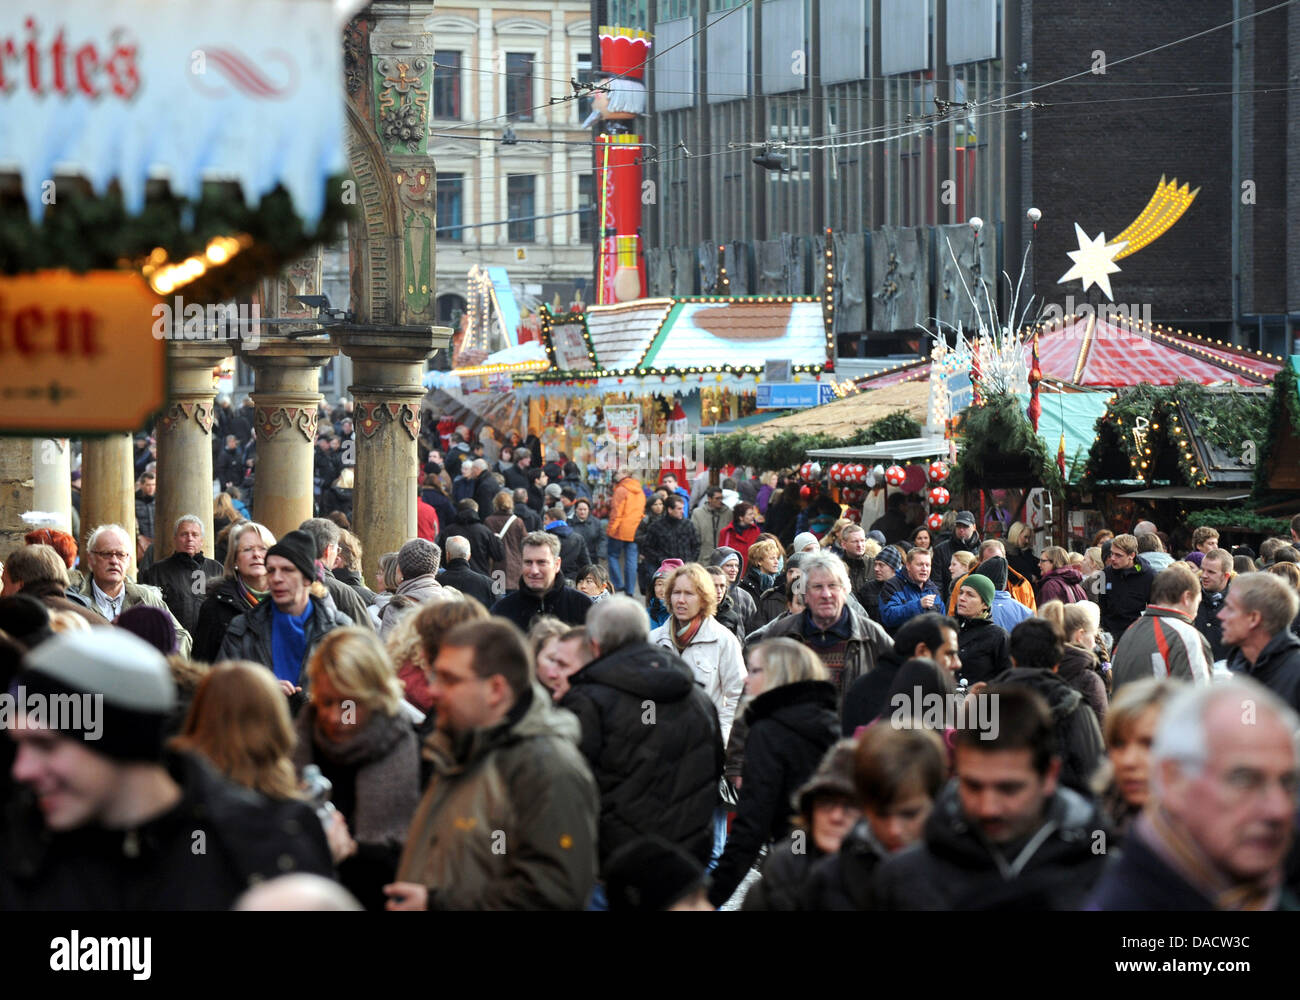 Tausende von Weihnachts-Einkäufer Fuß durch die Einkaufsstraßen zwischen Rathaus und dem Weihnachtsmarkt in Bremen, Deutschland, 17. Dezember 2011. Am letzte Wochenende des Advents verursacht einen Ansturm auf die festlich geschmückten Einkaufsstraßen. Foto: INGO WAGNER Stockfoto